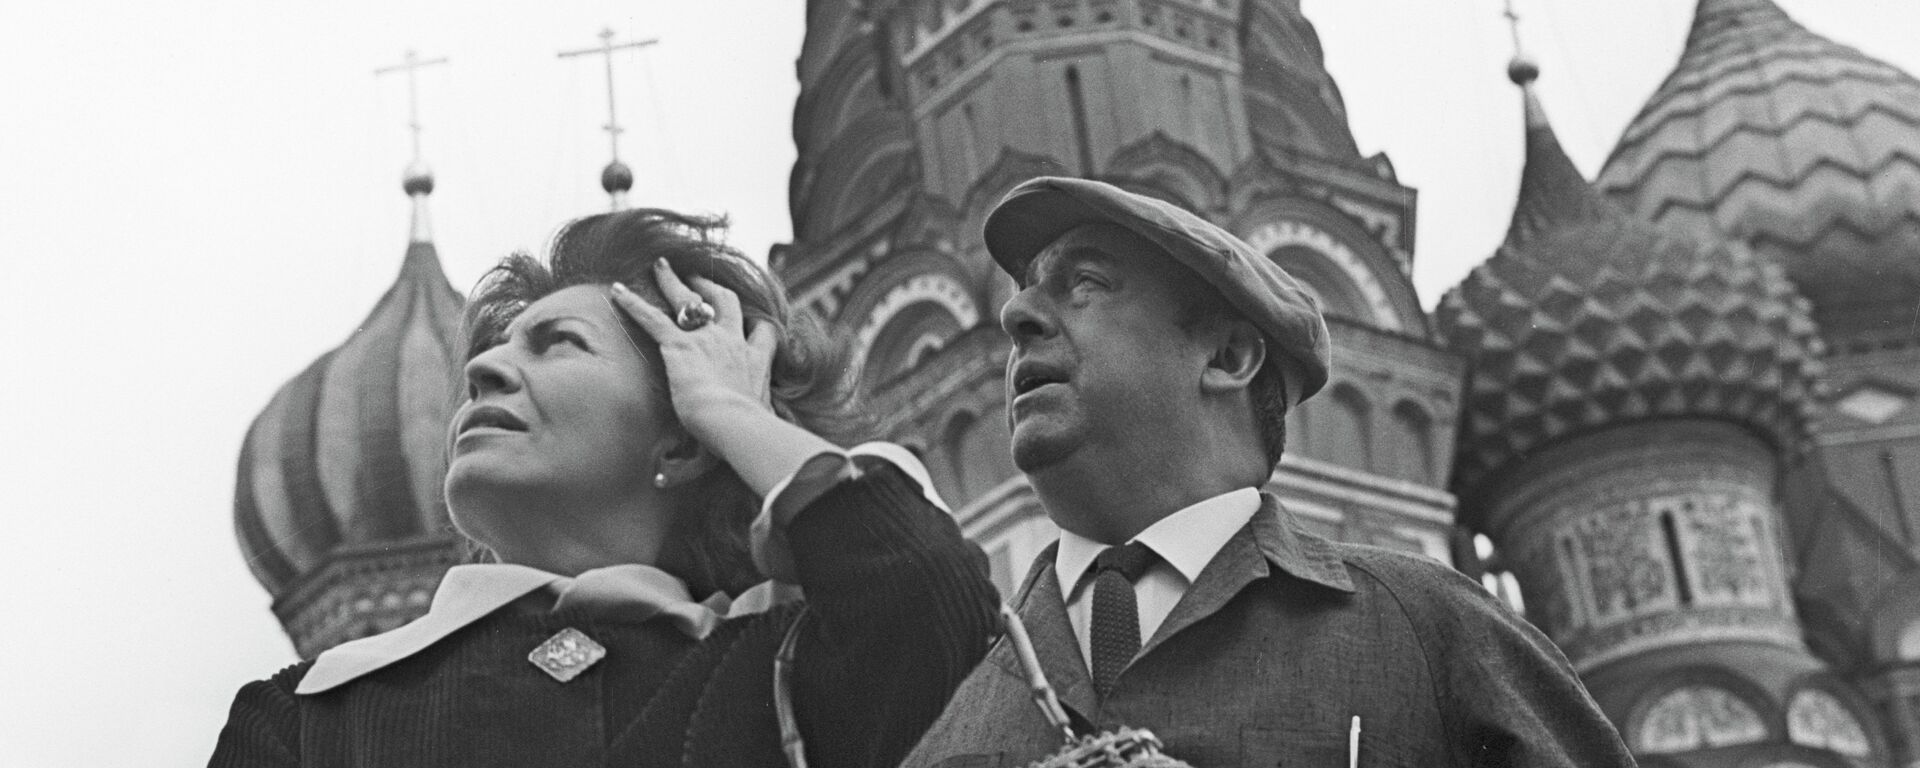 Pablo Neruda y su esposa Matilde Urrutia en Moscú en 1962. - Sputnik Mundo, 1920, 07.11.2017